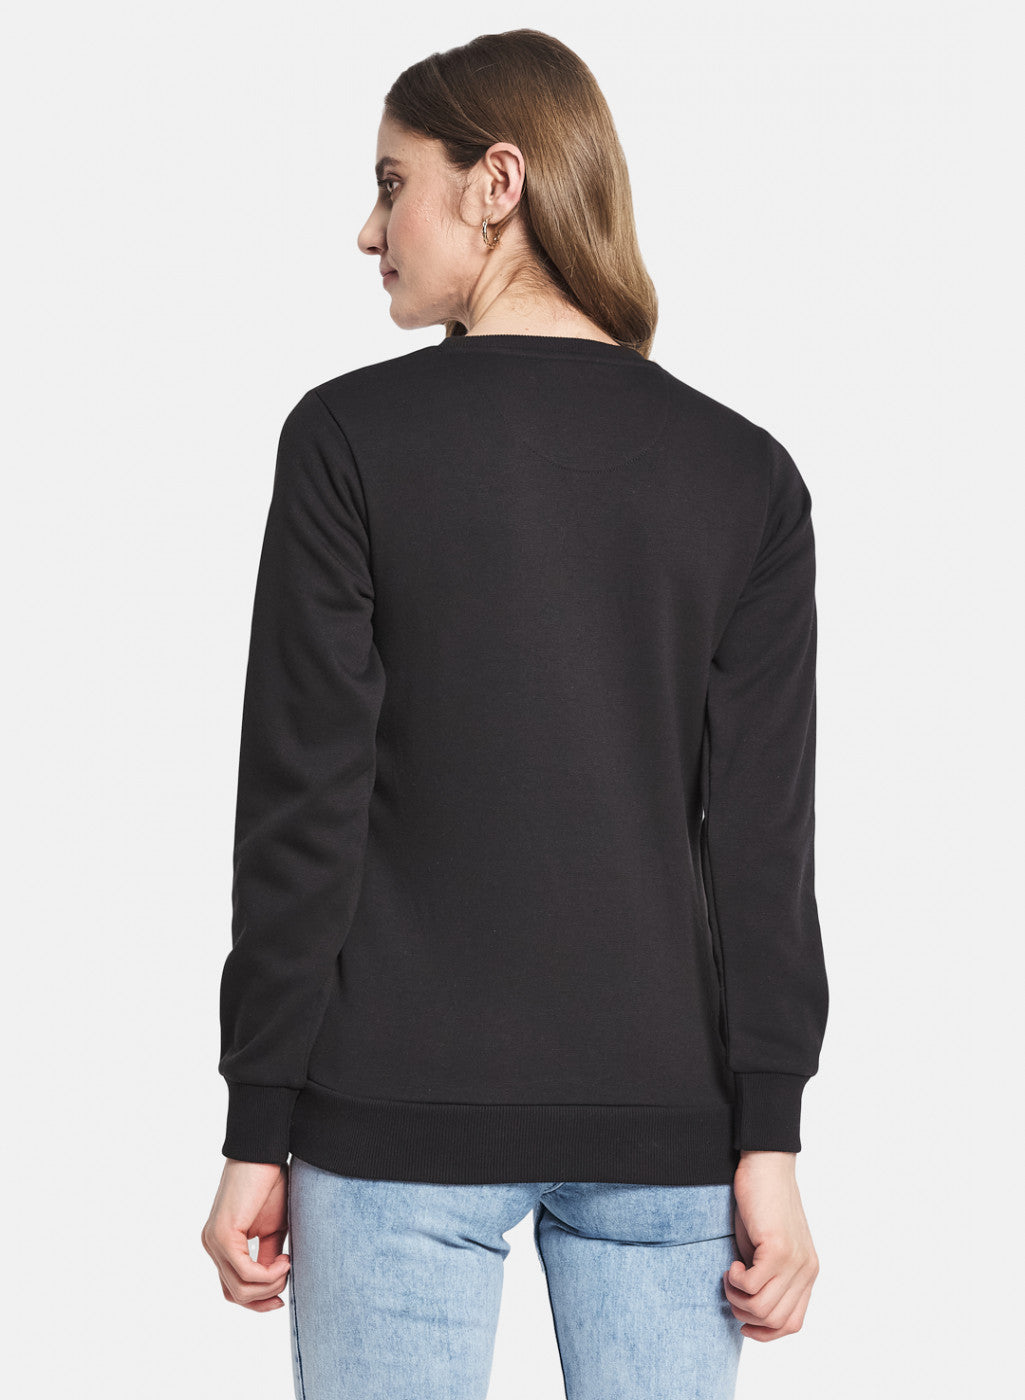 Women Black Printed Sweatshirt